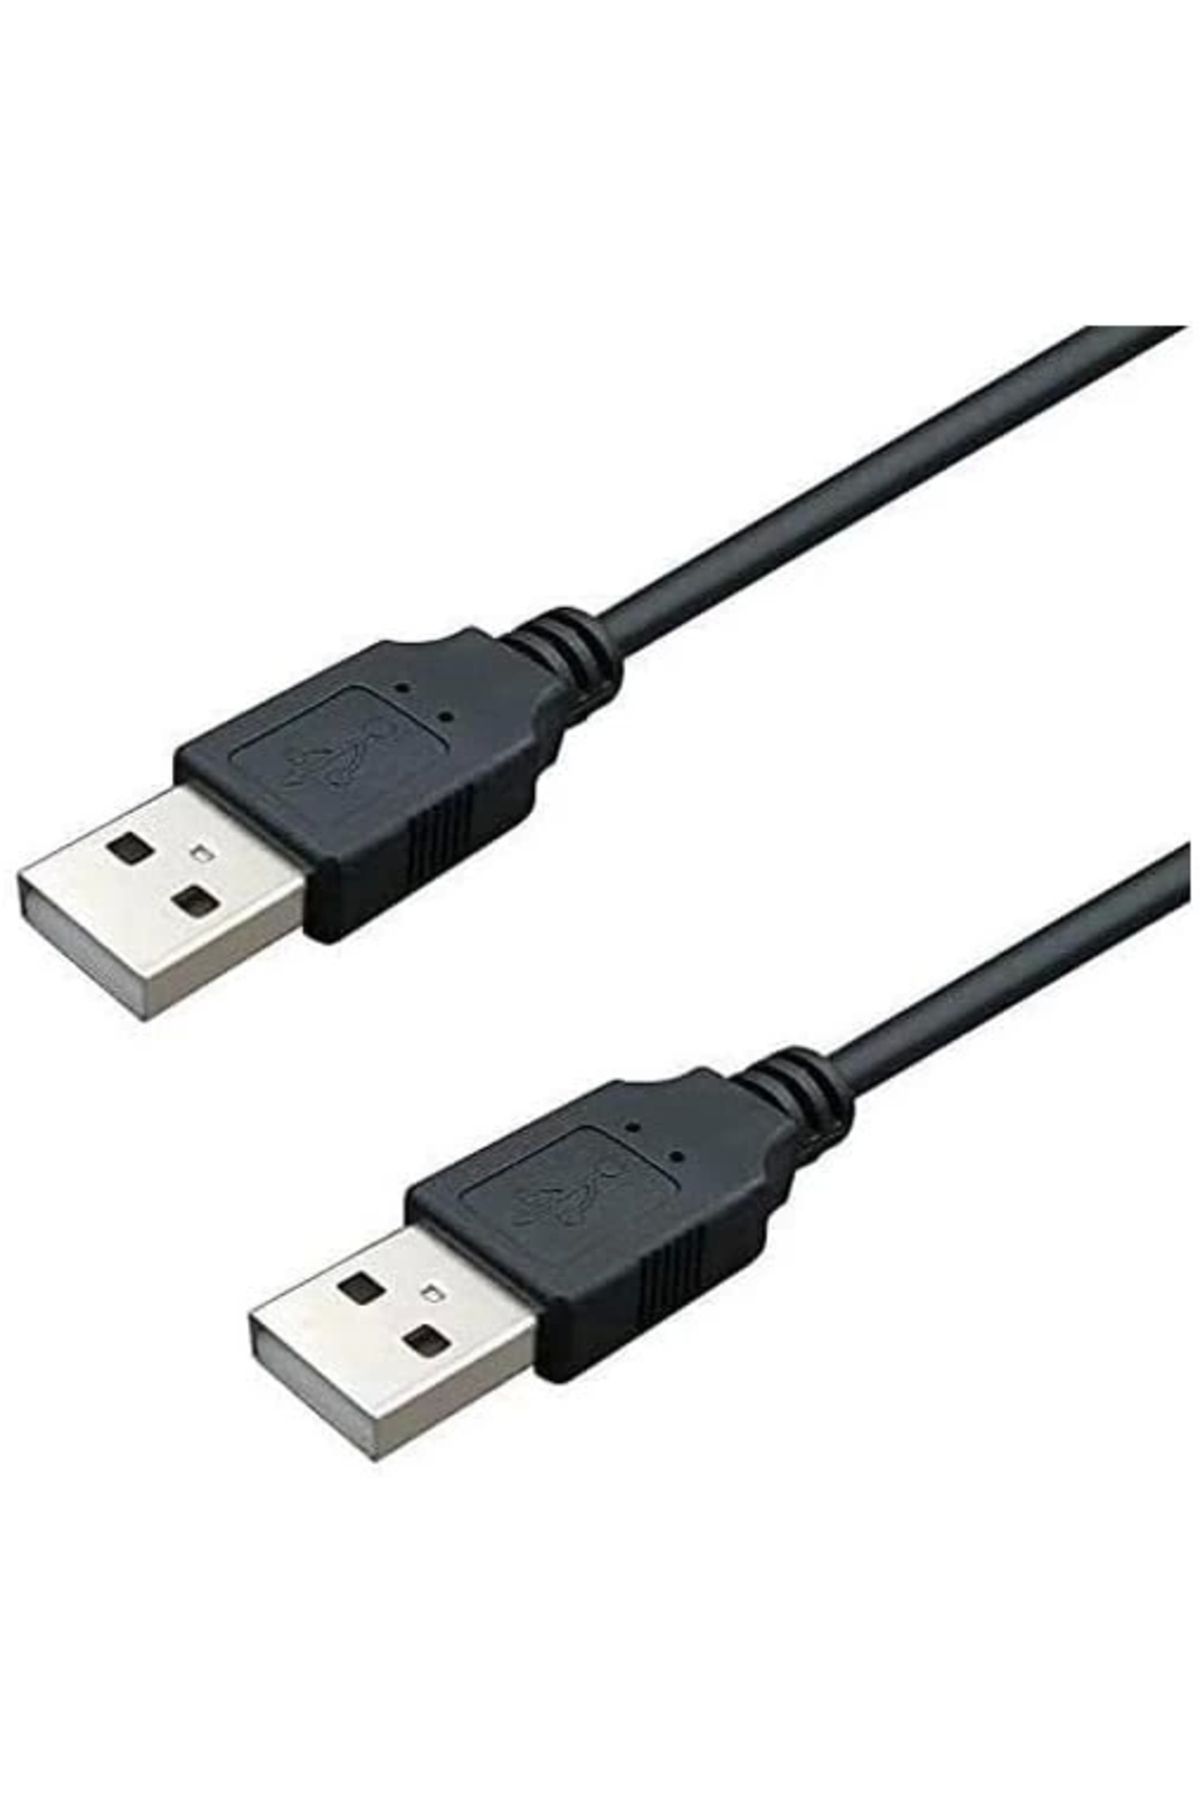 starnewstore -USB05 0.5 Metre USB to USB Kablo, book Soğutucu Kablosu, Kısa Usb Kablo